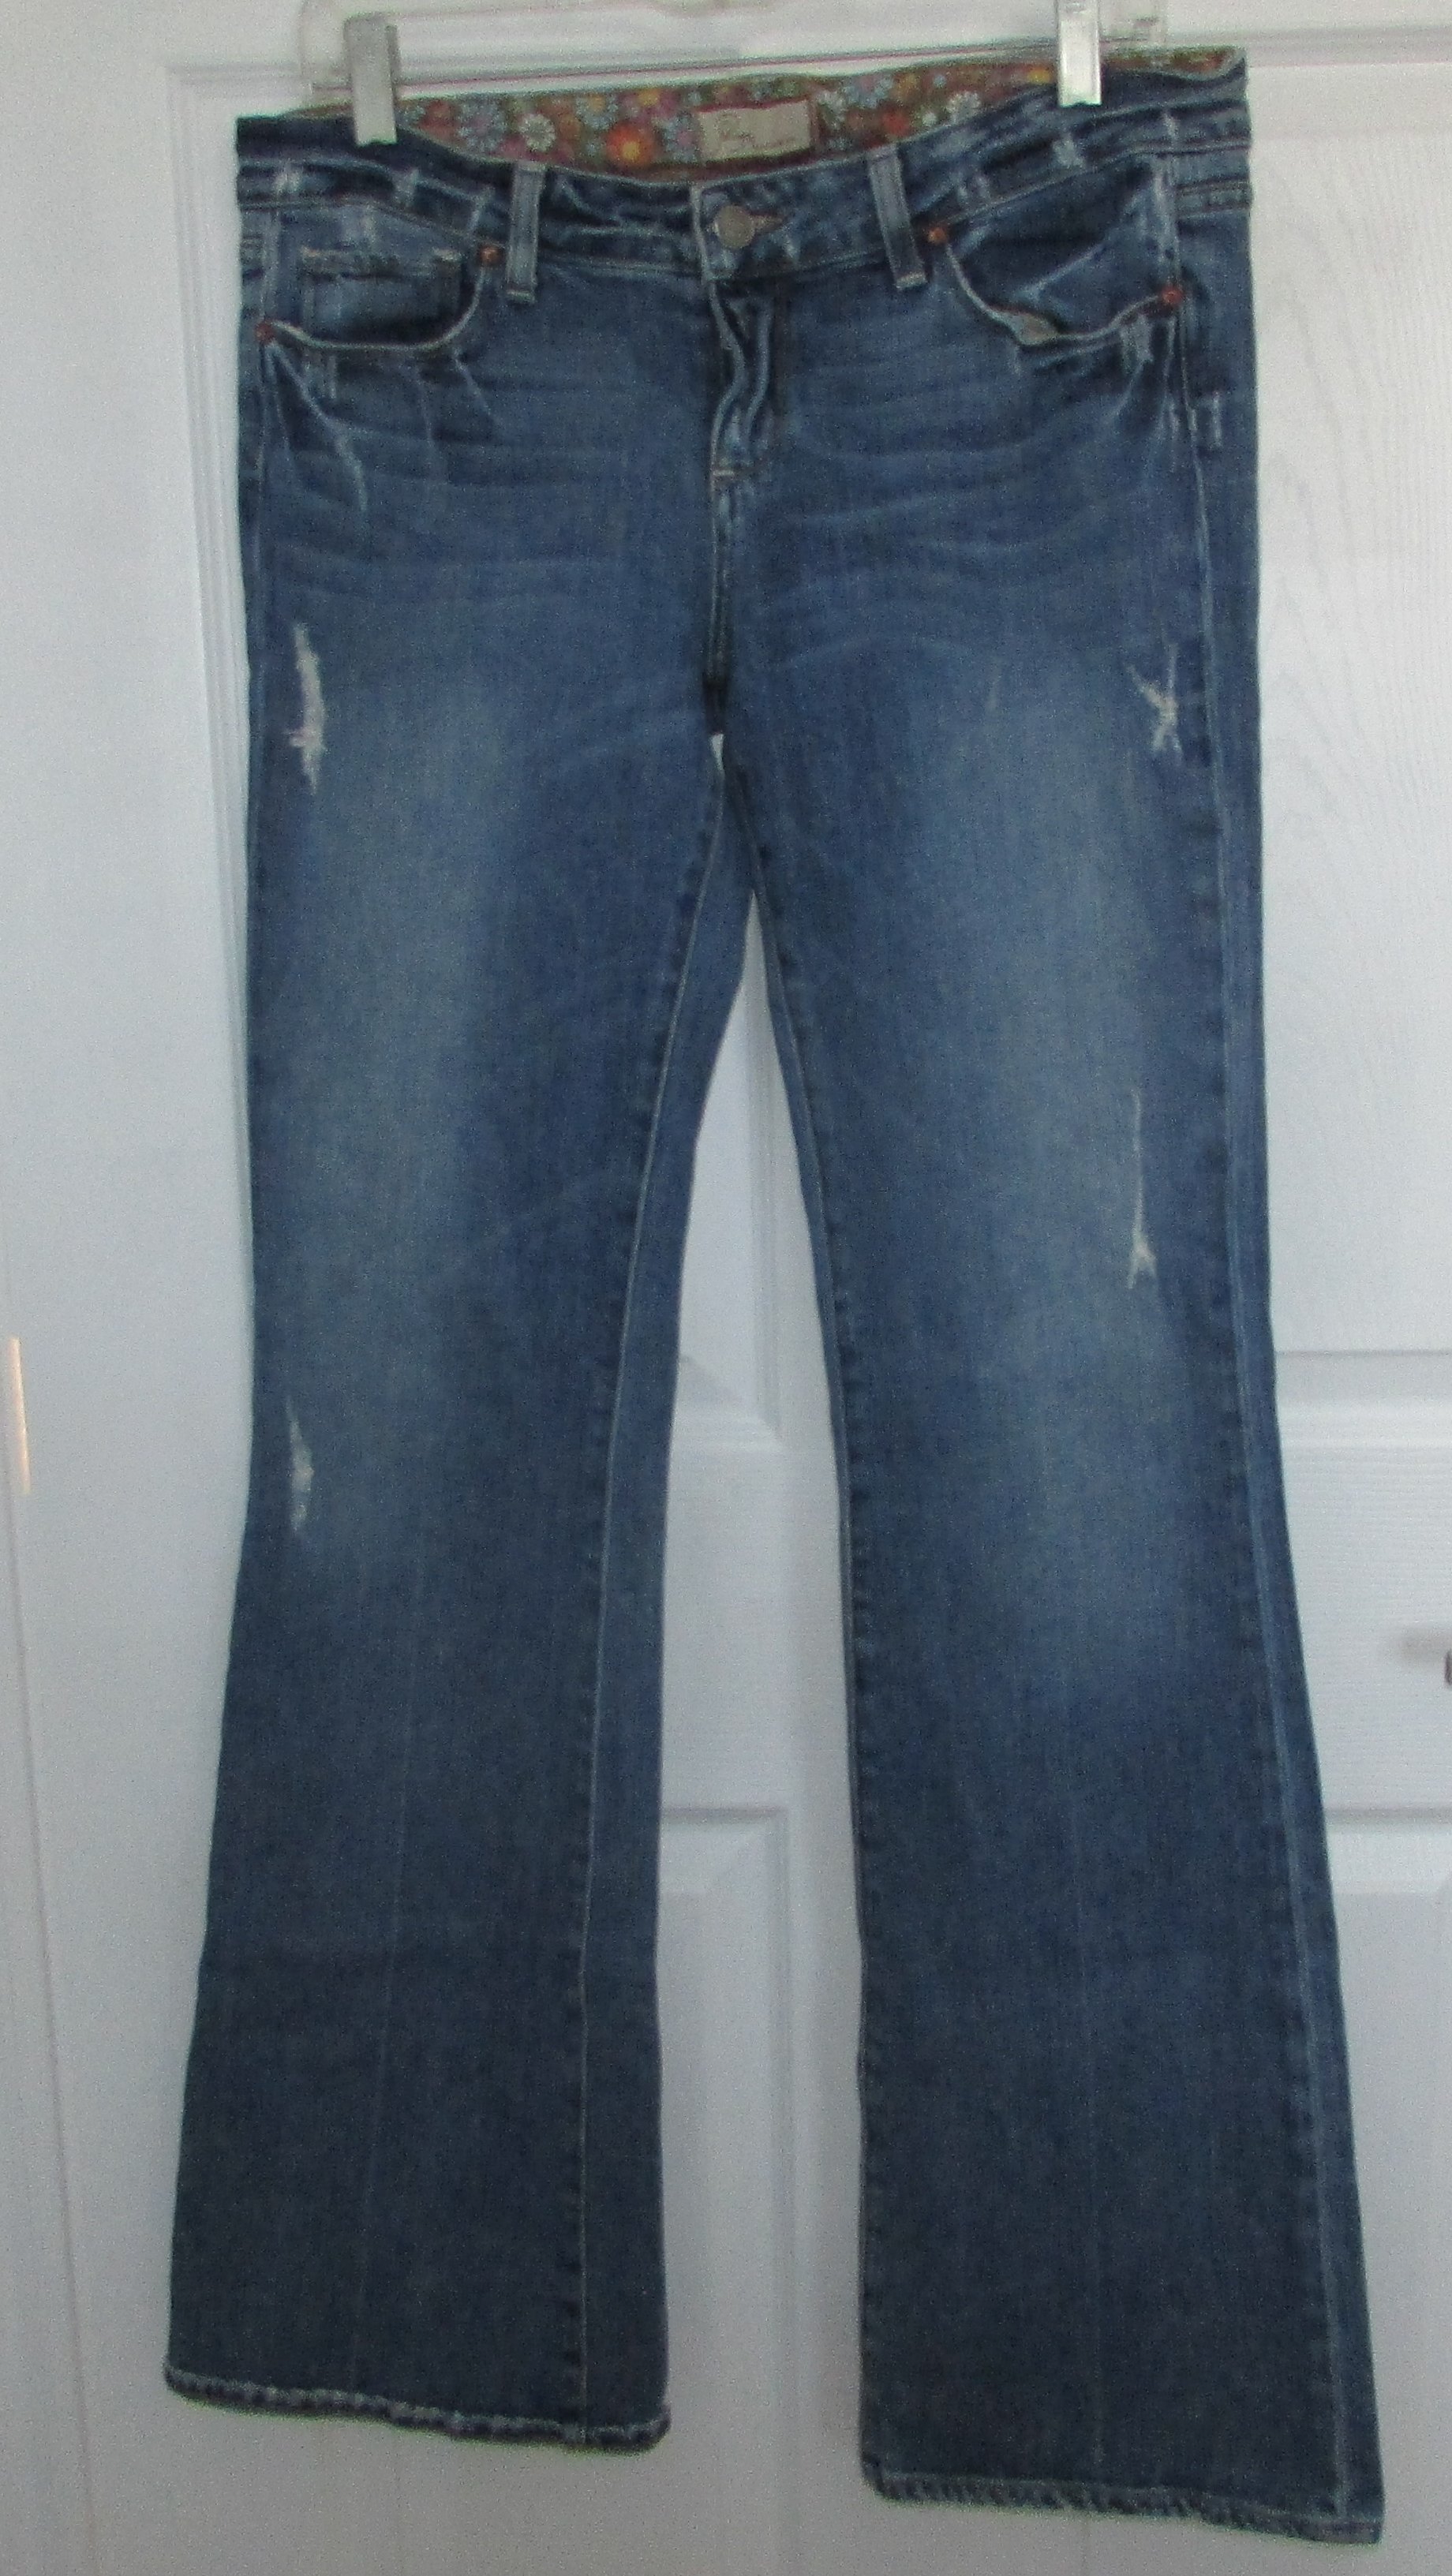 PAIGE Denim Laurel Canyon Boot Cut Jeans - 29